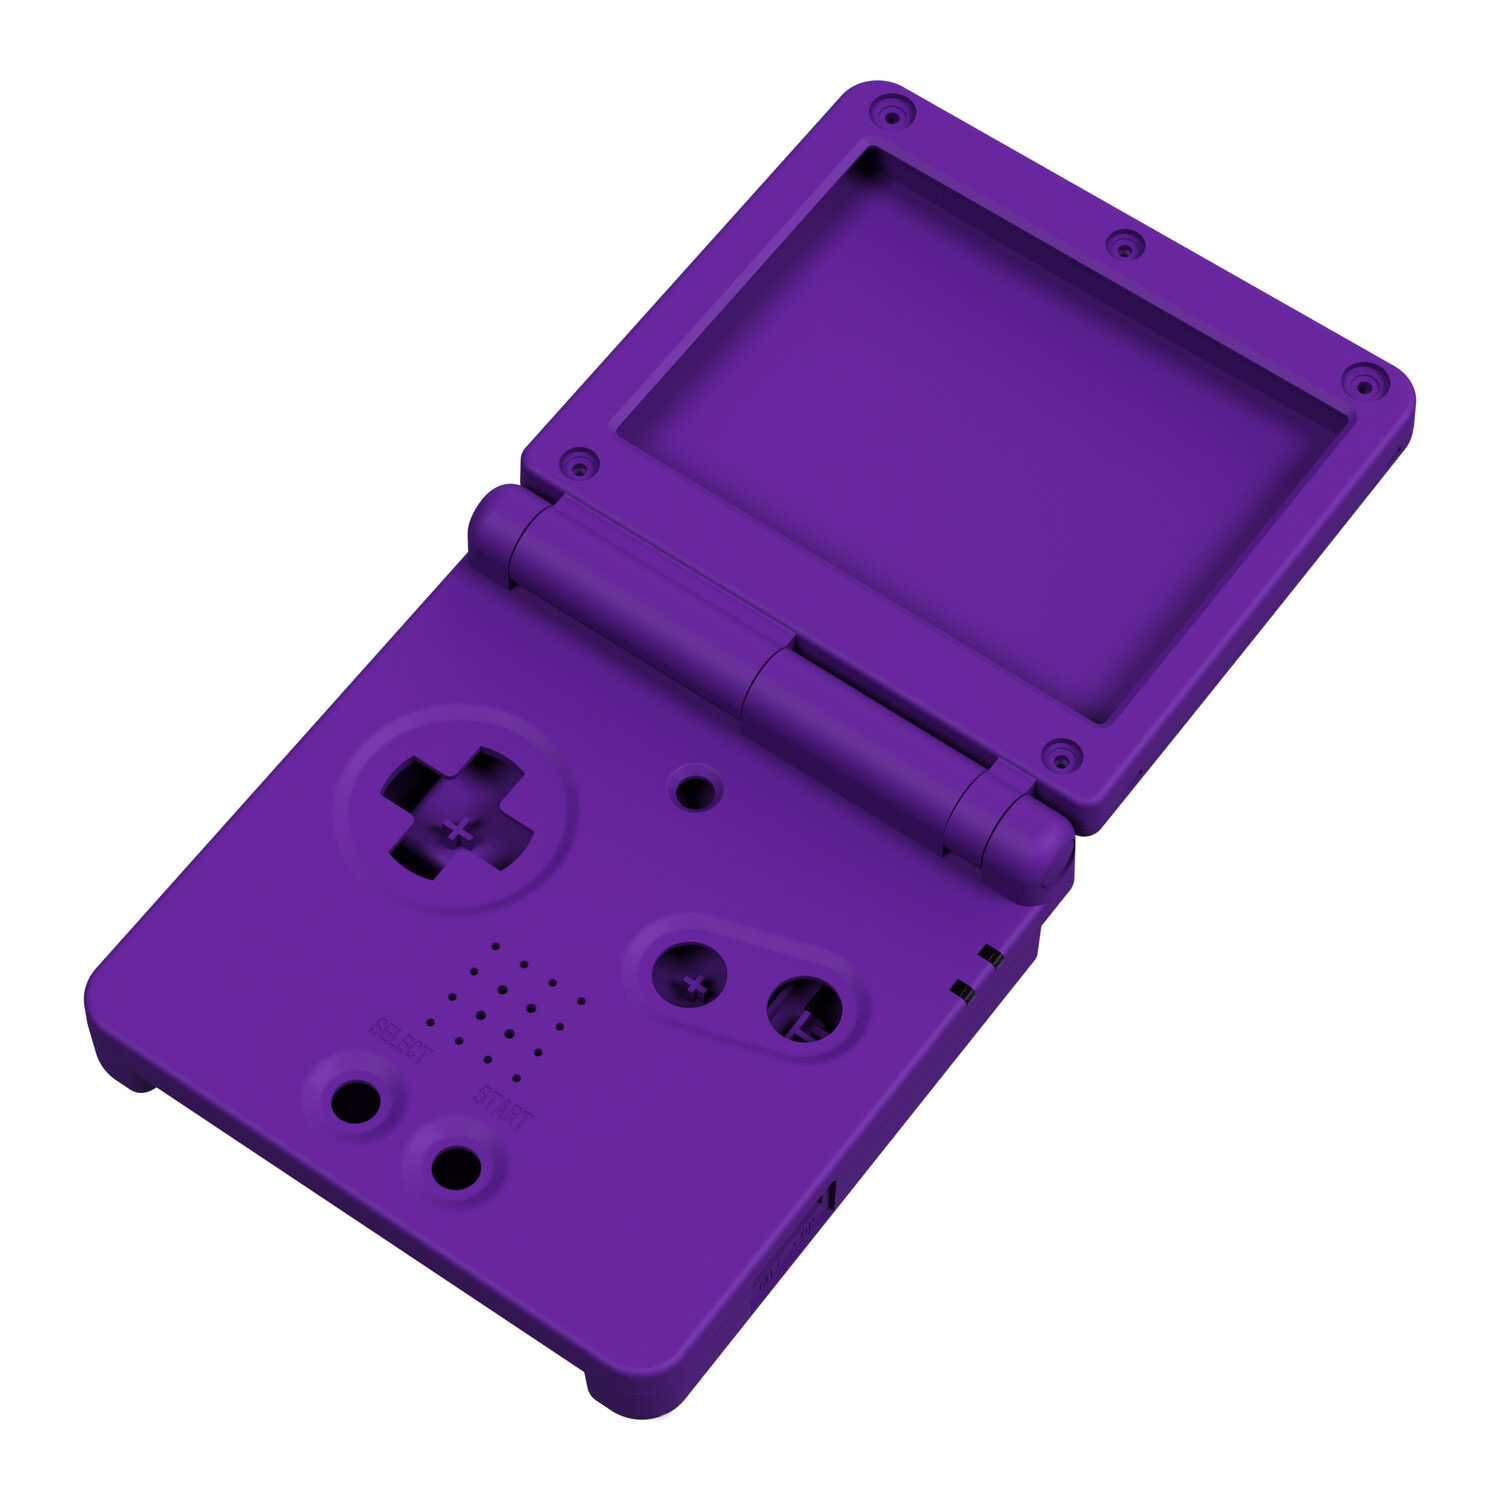 Game Boy Advance SP Gehäuse (Solid Purple)